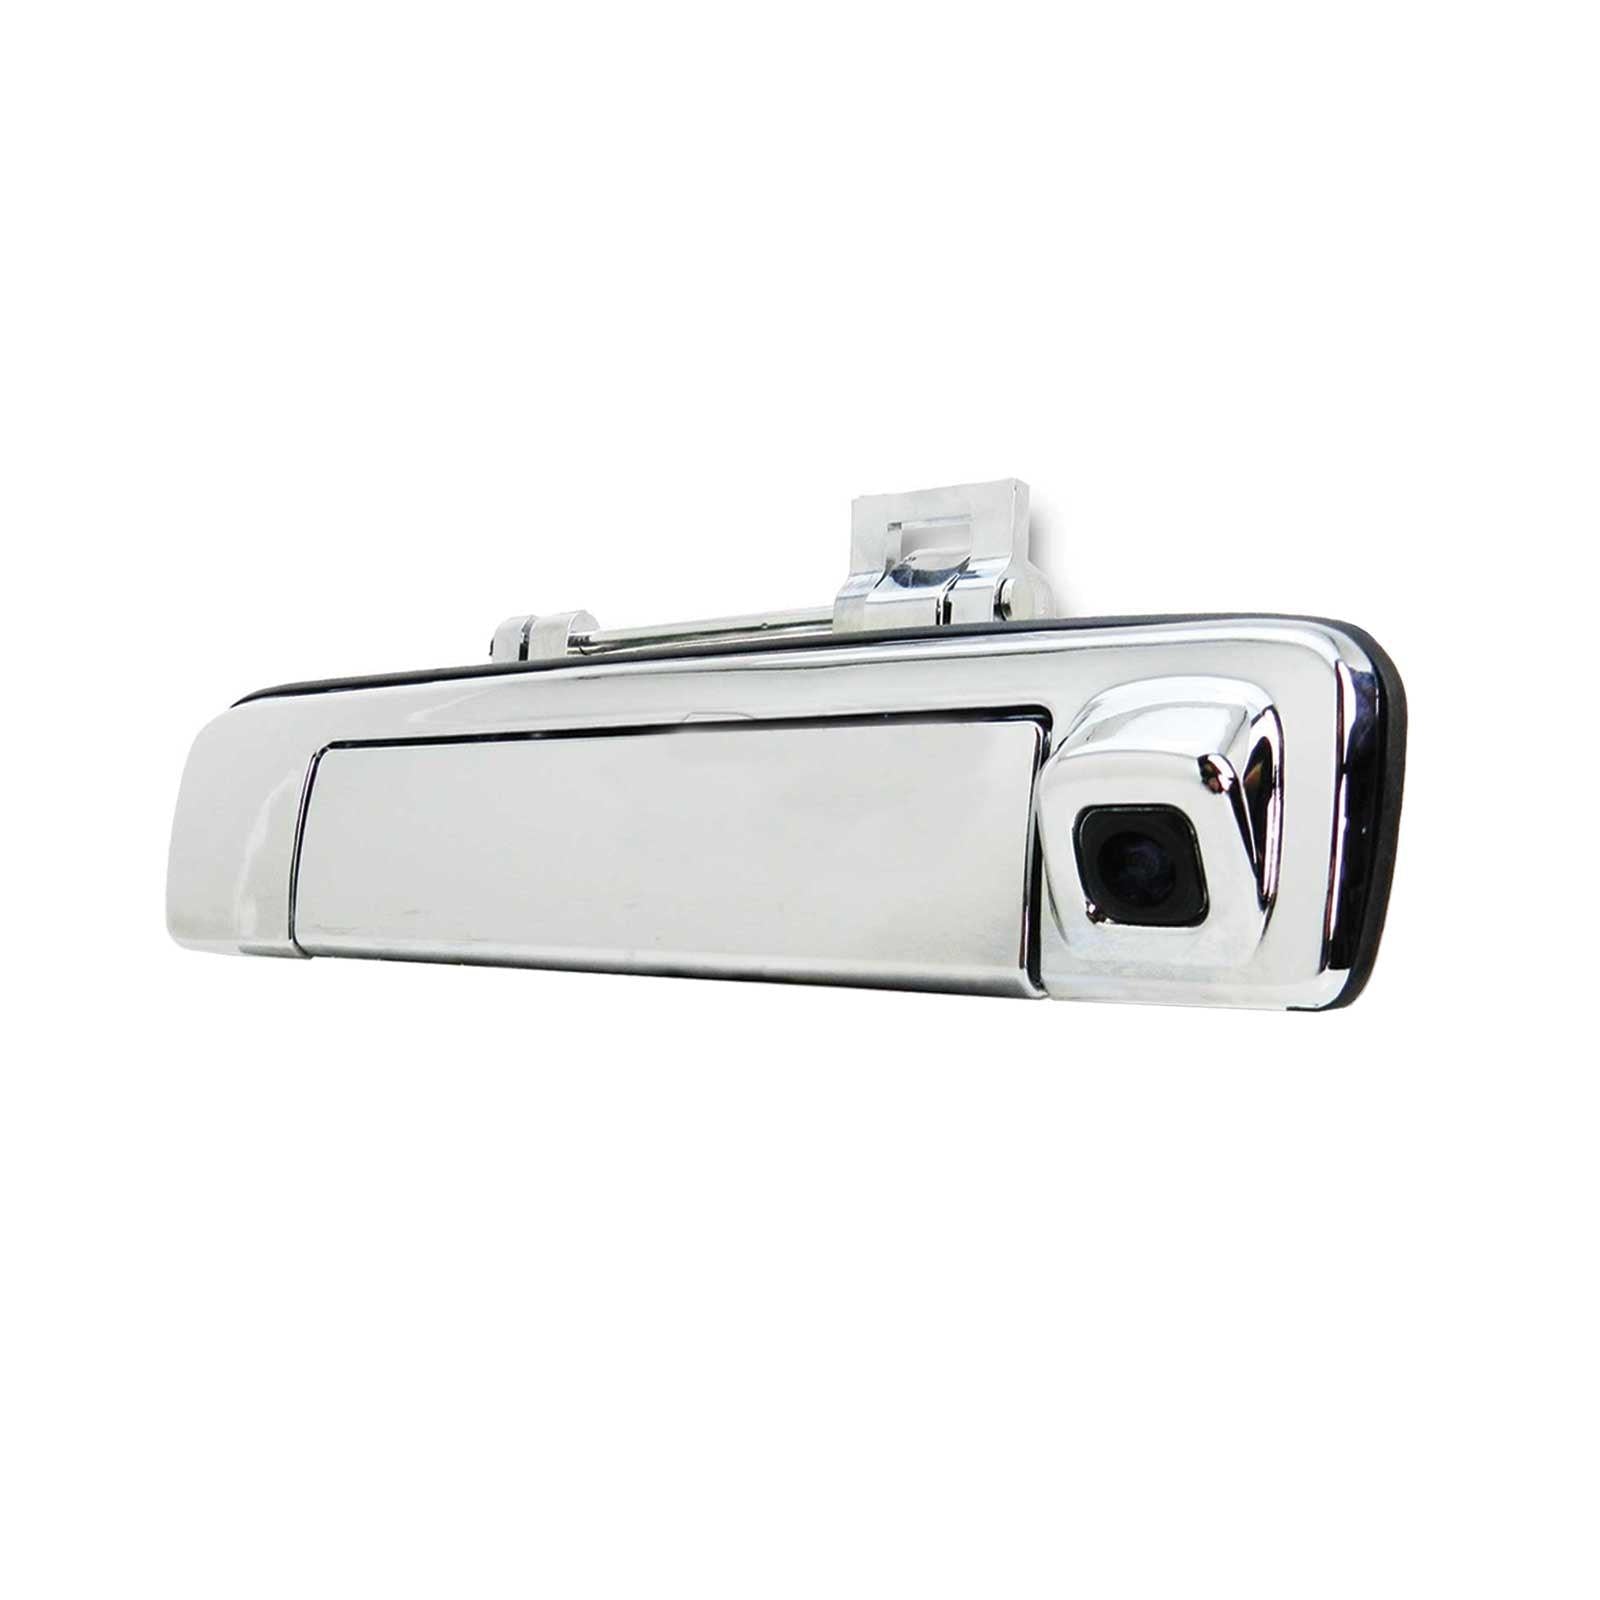 Tailgate Handle Chrome with Reverse Camera NEW fits Isuzu D-MAX Ute 12-'15 LS-U Dmax - 4X4OC™